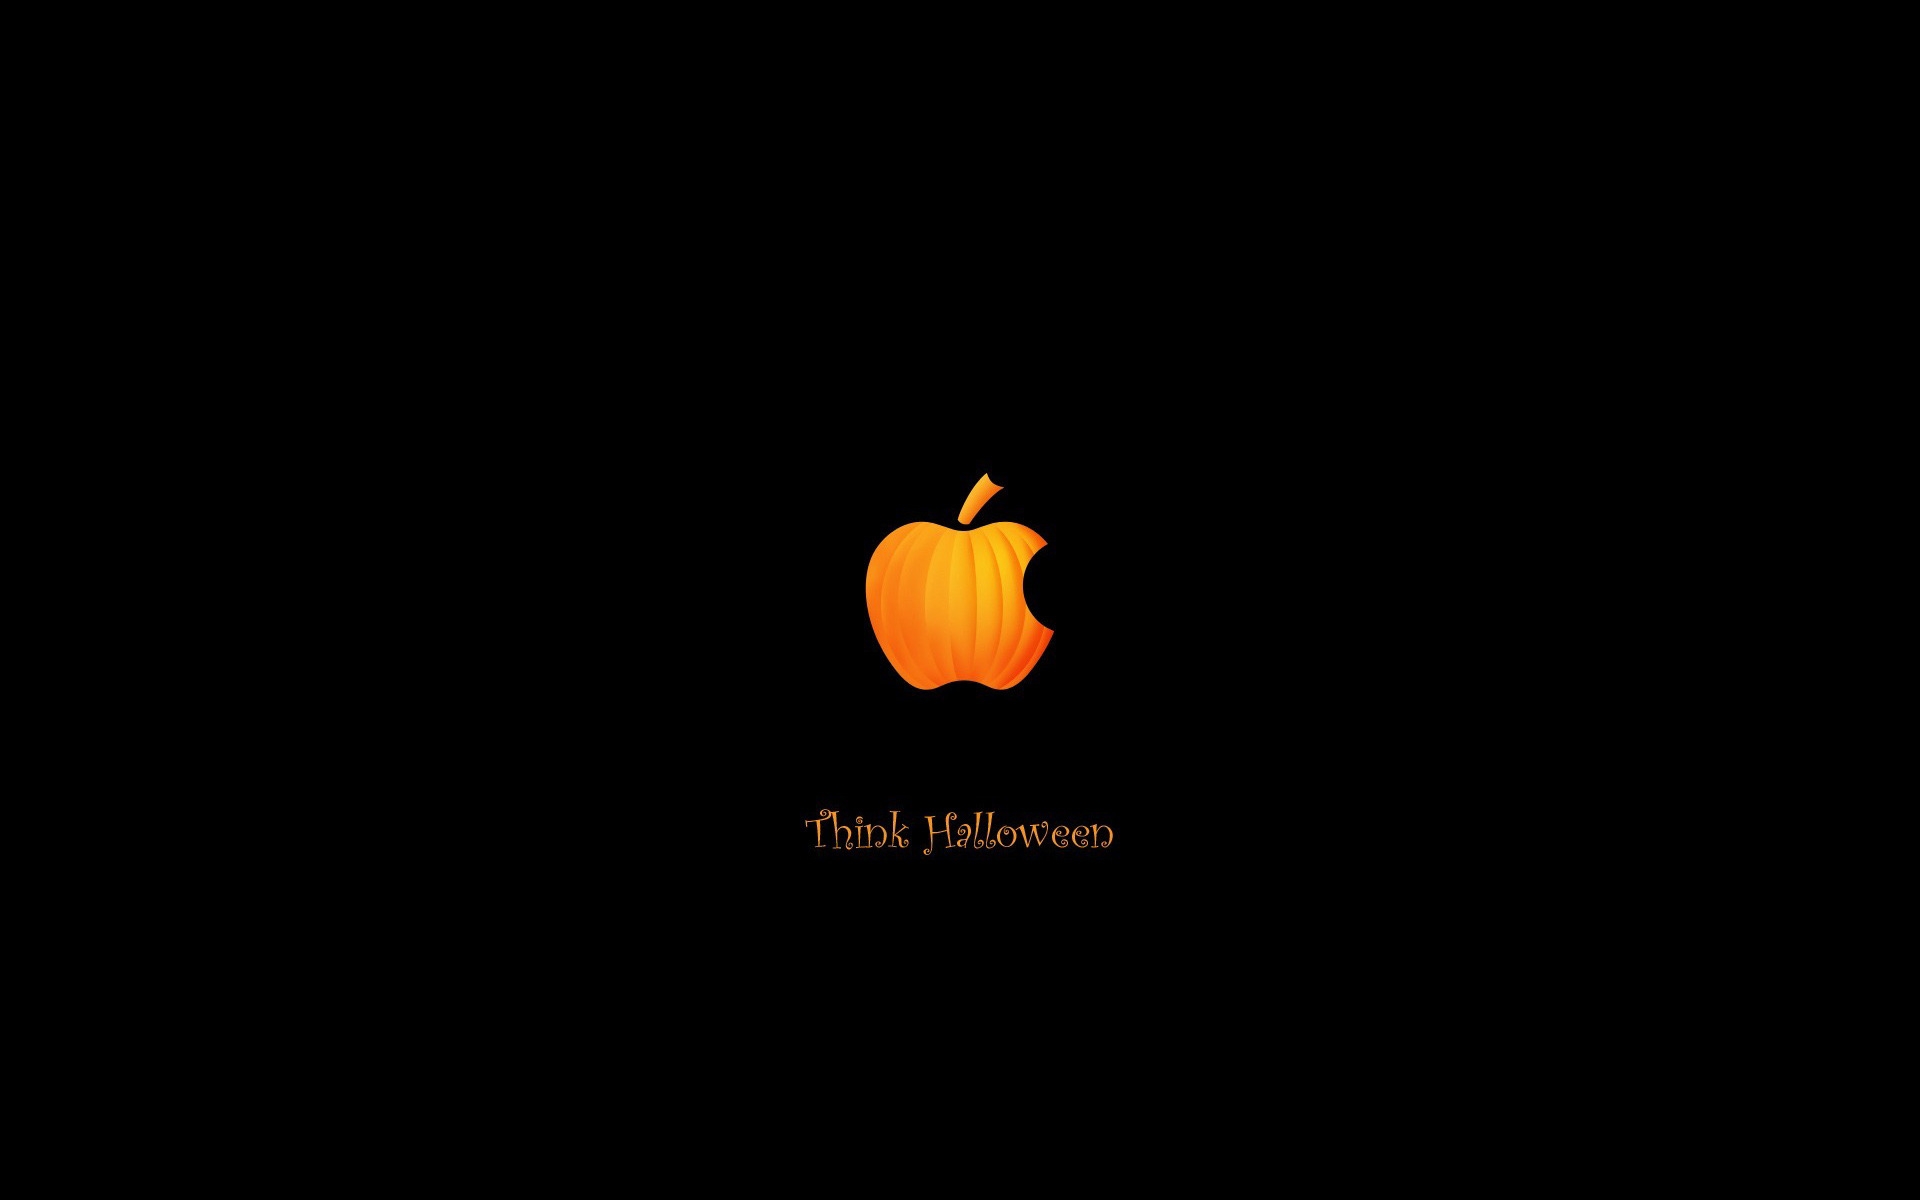 Pumpkin Apple for 1920 x 1200 widescreen resolution